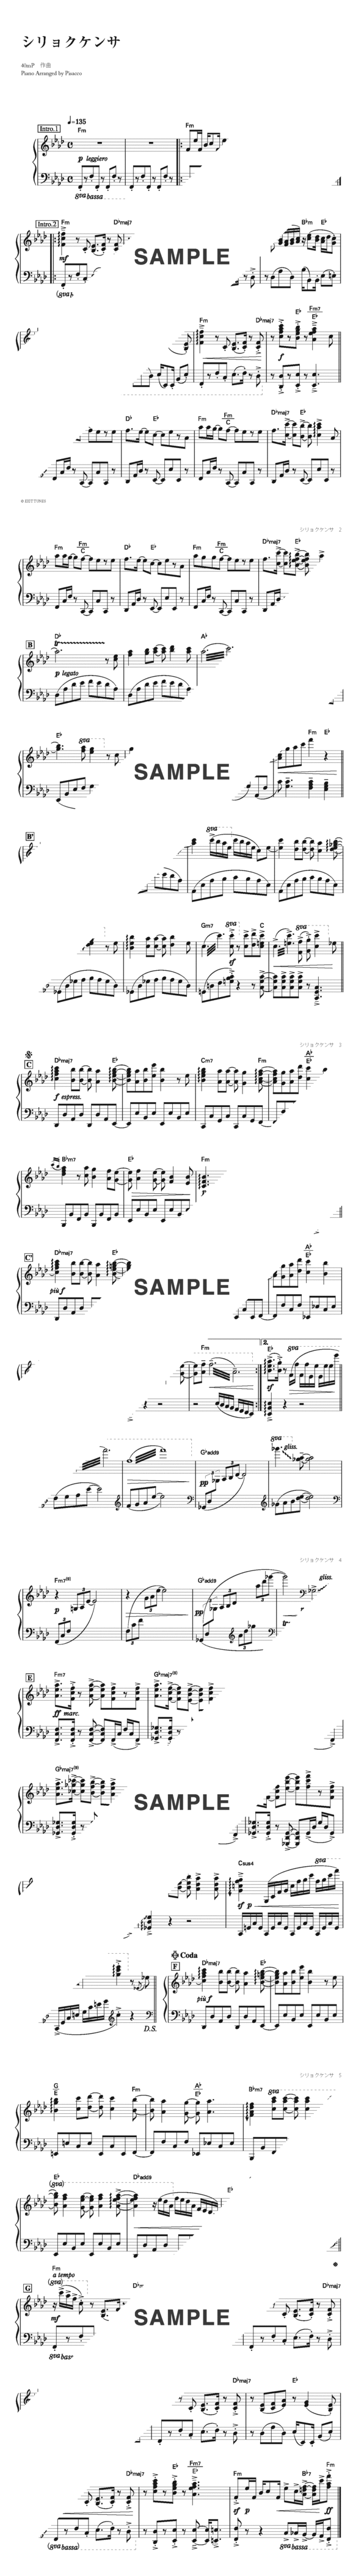 楽譜 シリョクケンサ 40mp Feat Gumi ピアノ ソロ譜 上級 デプロmp 楽譜 Elise